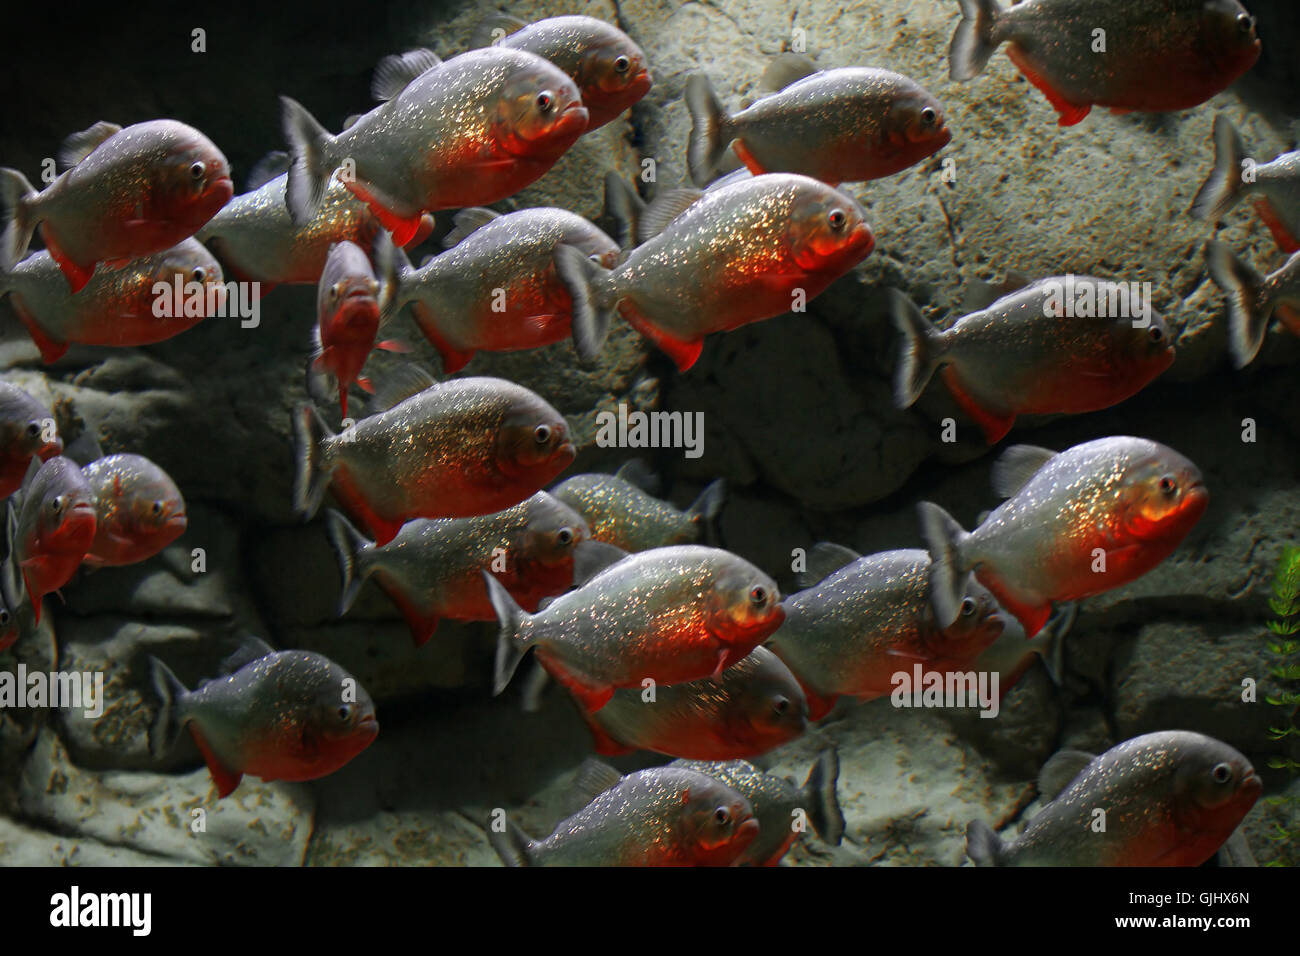 aquarium aggressive agressive Stock Photo